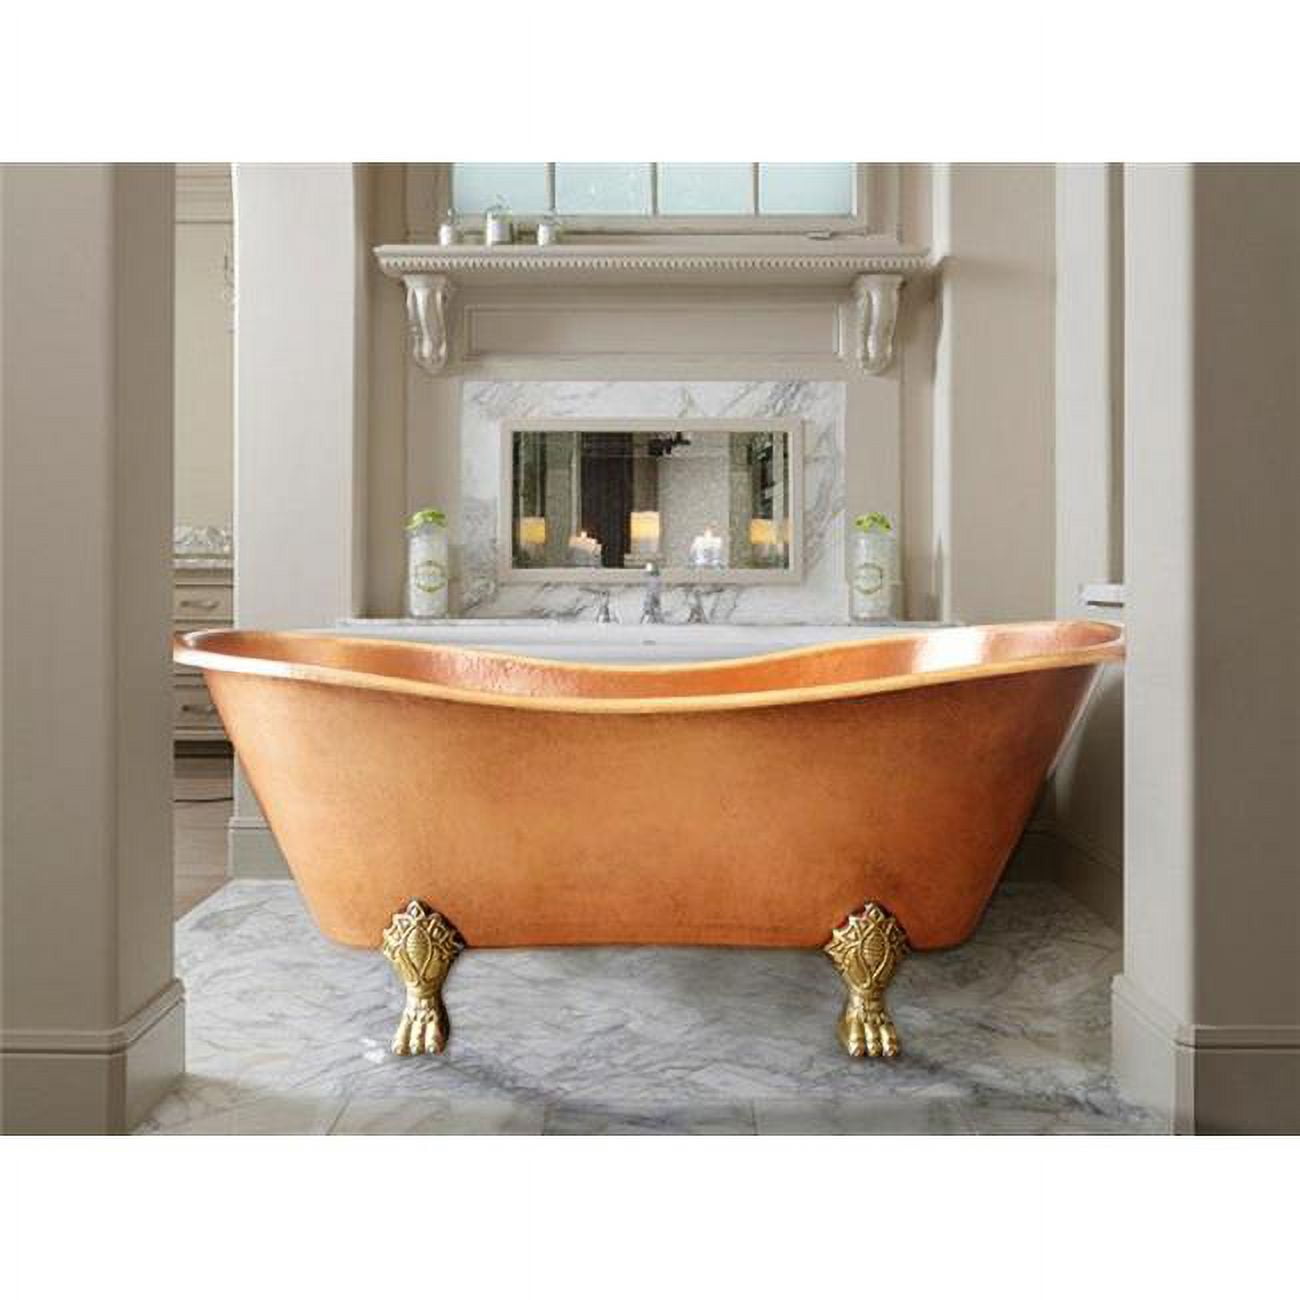 Cbt-at-58-ma Copper Bath Tub Antique Design, Matte - Small - 28 X 28 X 58 In.